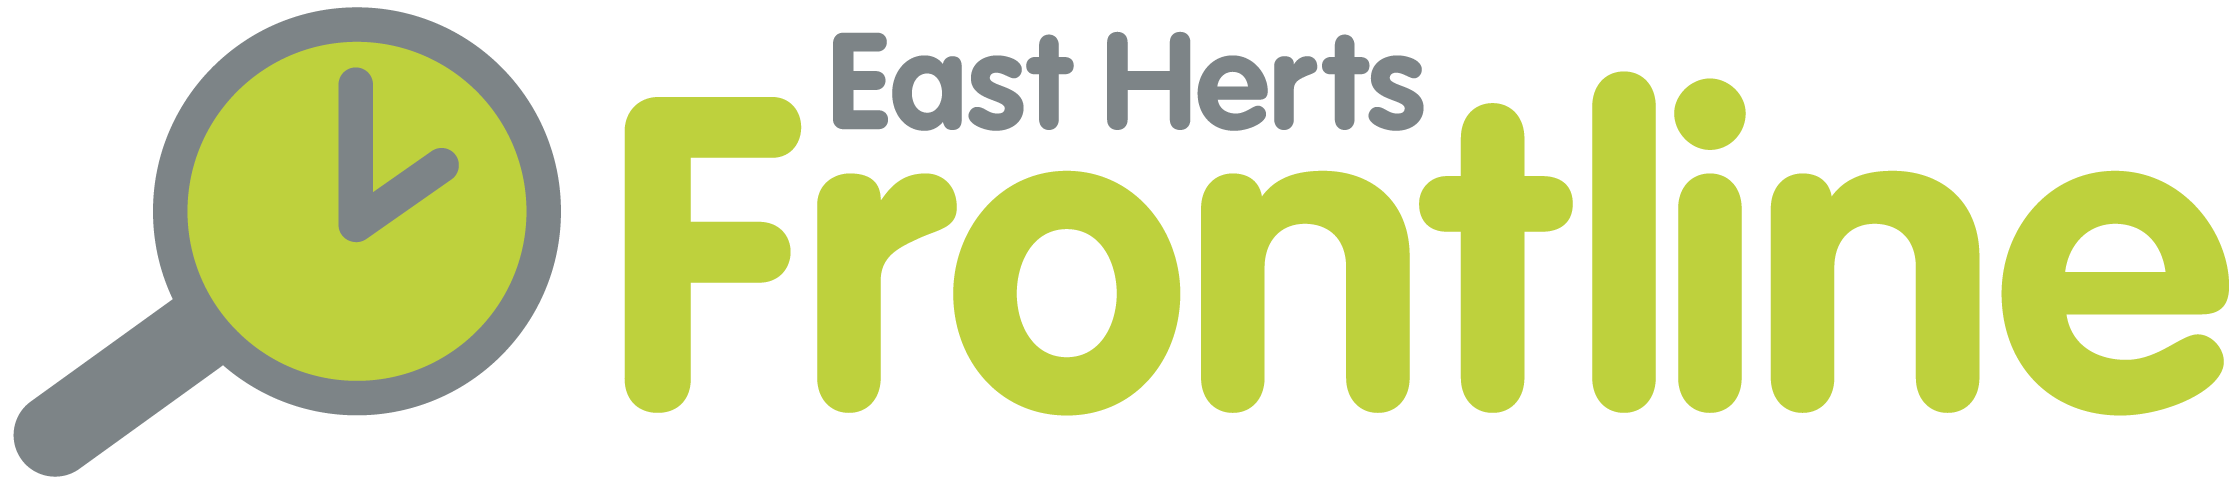 Frontline East Herts